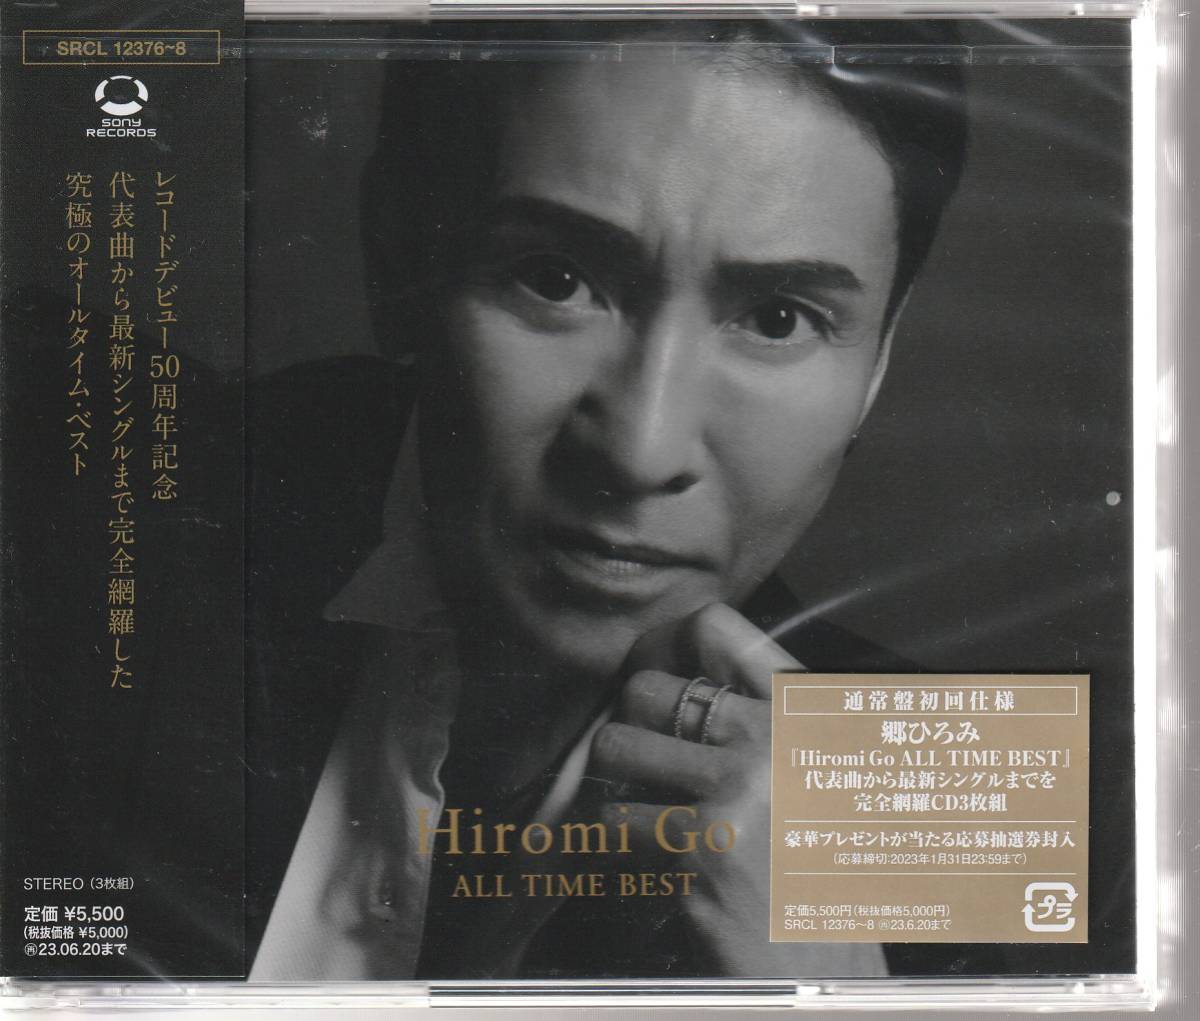  Go Hiromi san,[Hiromi Go ALL TIME BEST] CD3 листов комплект обычный запись первый раз specification не использовался * нераспечатанный 